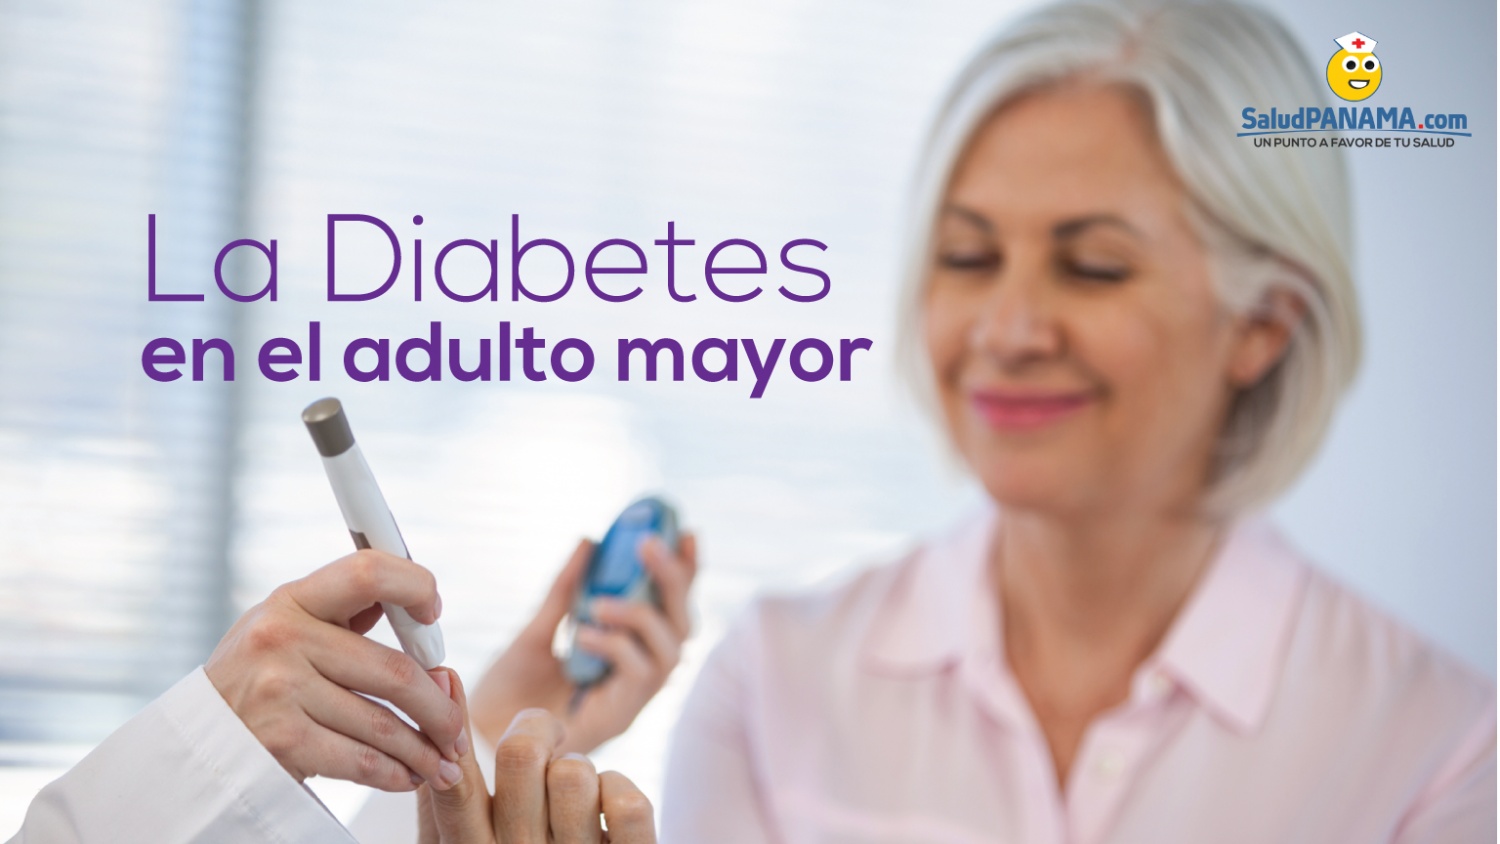 La diabetes en el adulto mayor